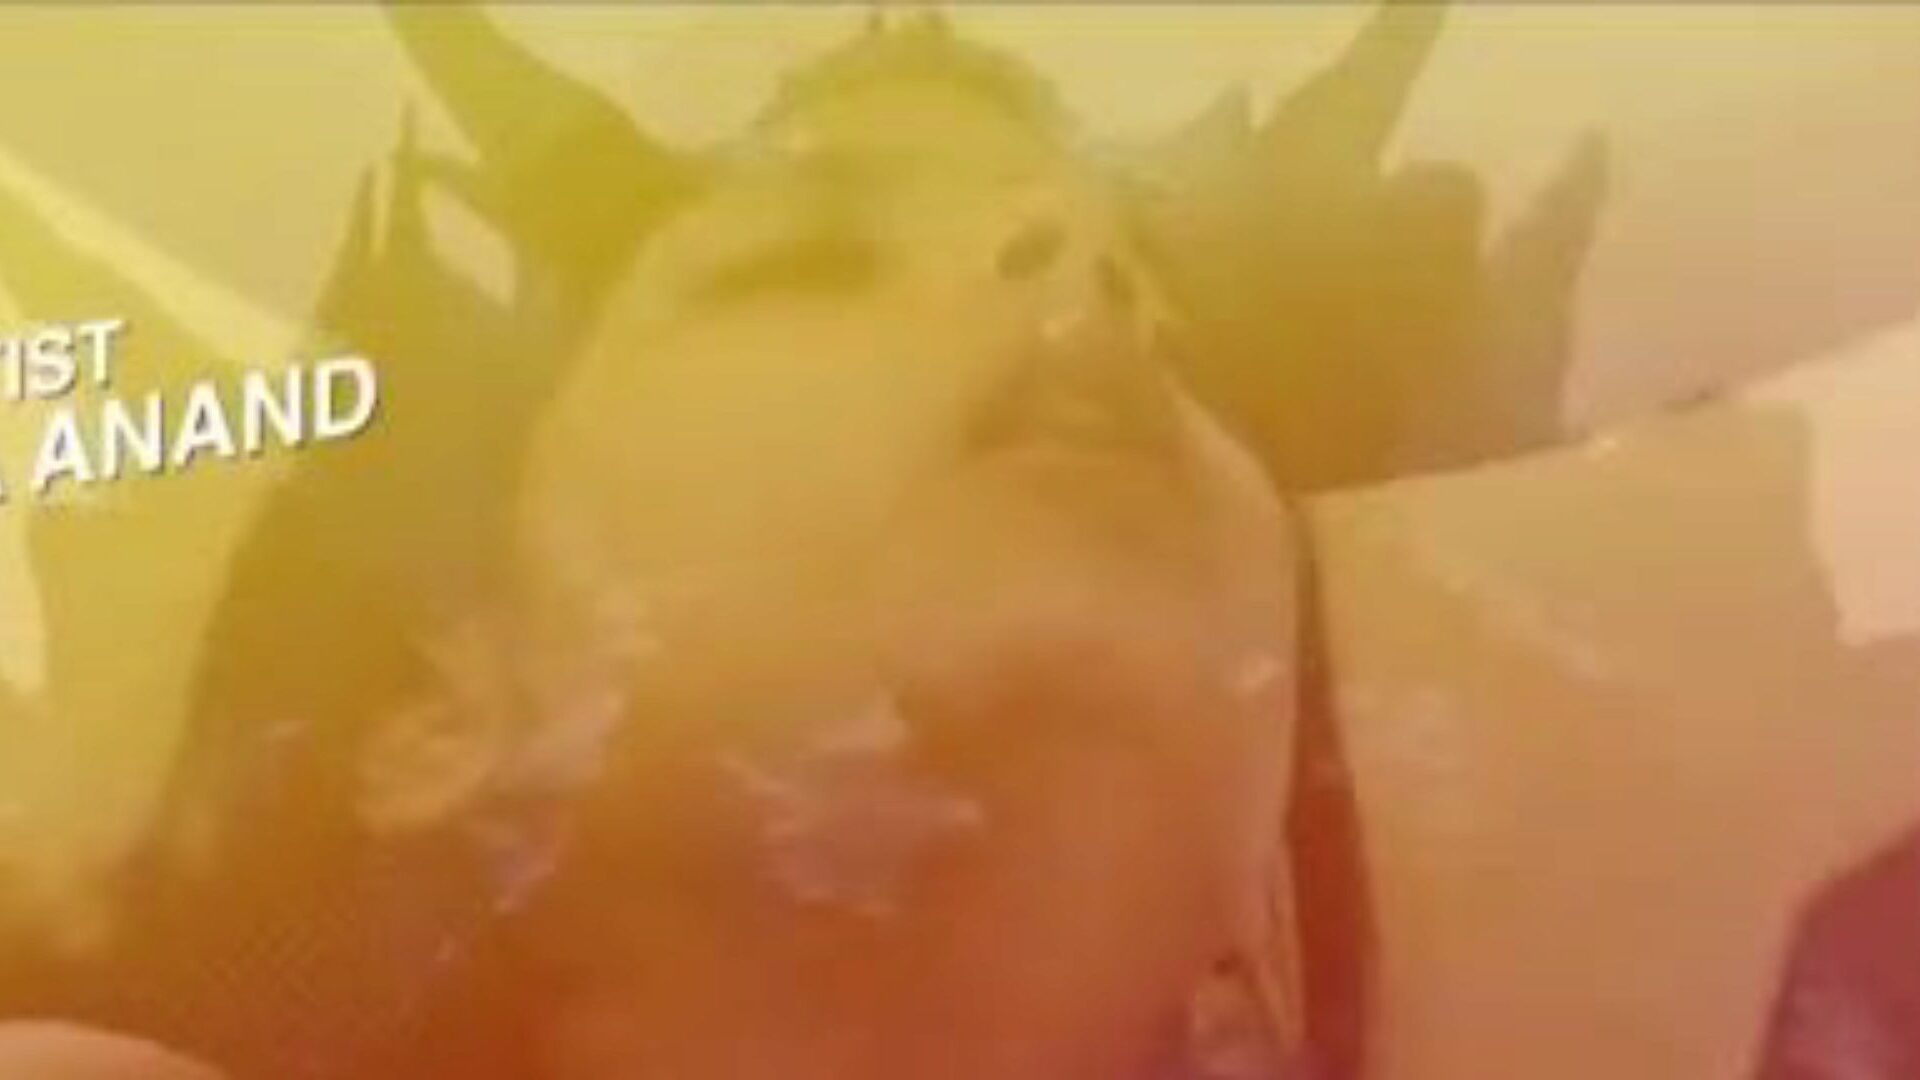 гарам Хава 2020: бесплатно индийское порно видео 24 - xhamster часы гарам Хава 2020 труба любовью фильм сцена для свободного для всех на xhamster, с самых сексуальных стайки азиатских индийский и веб-серии концертов порнографии в кино